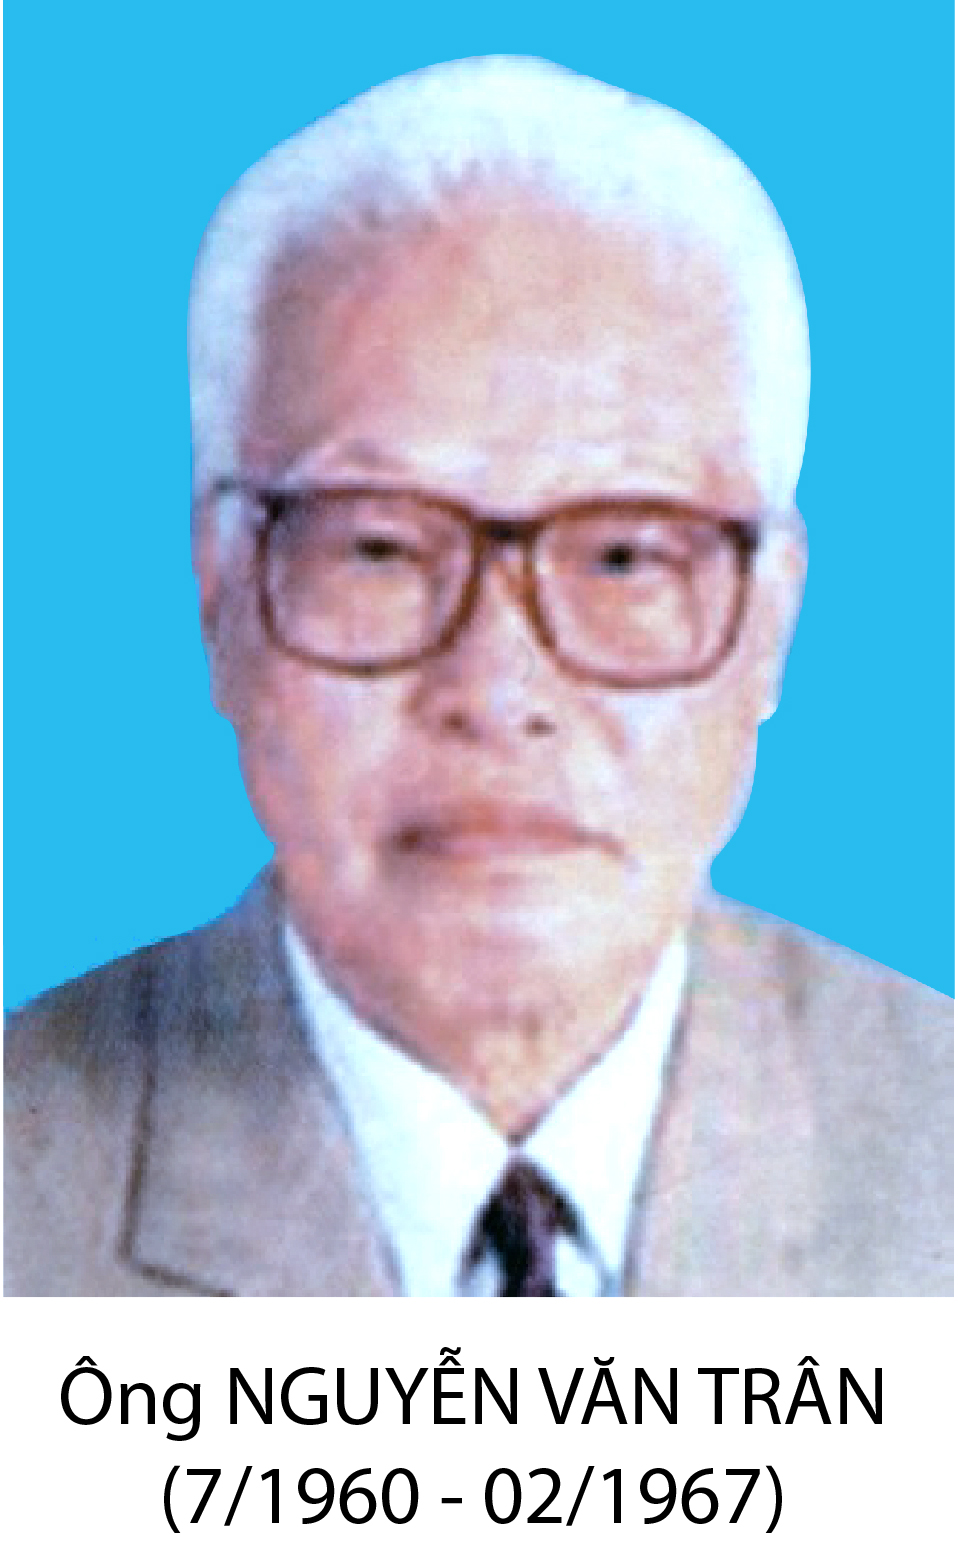 BT Nguyen Van Tran